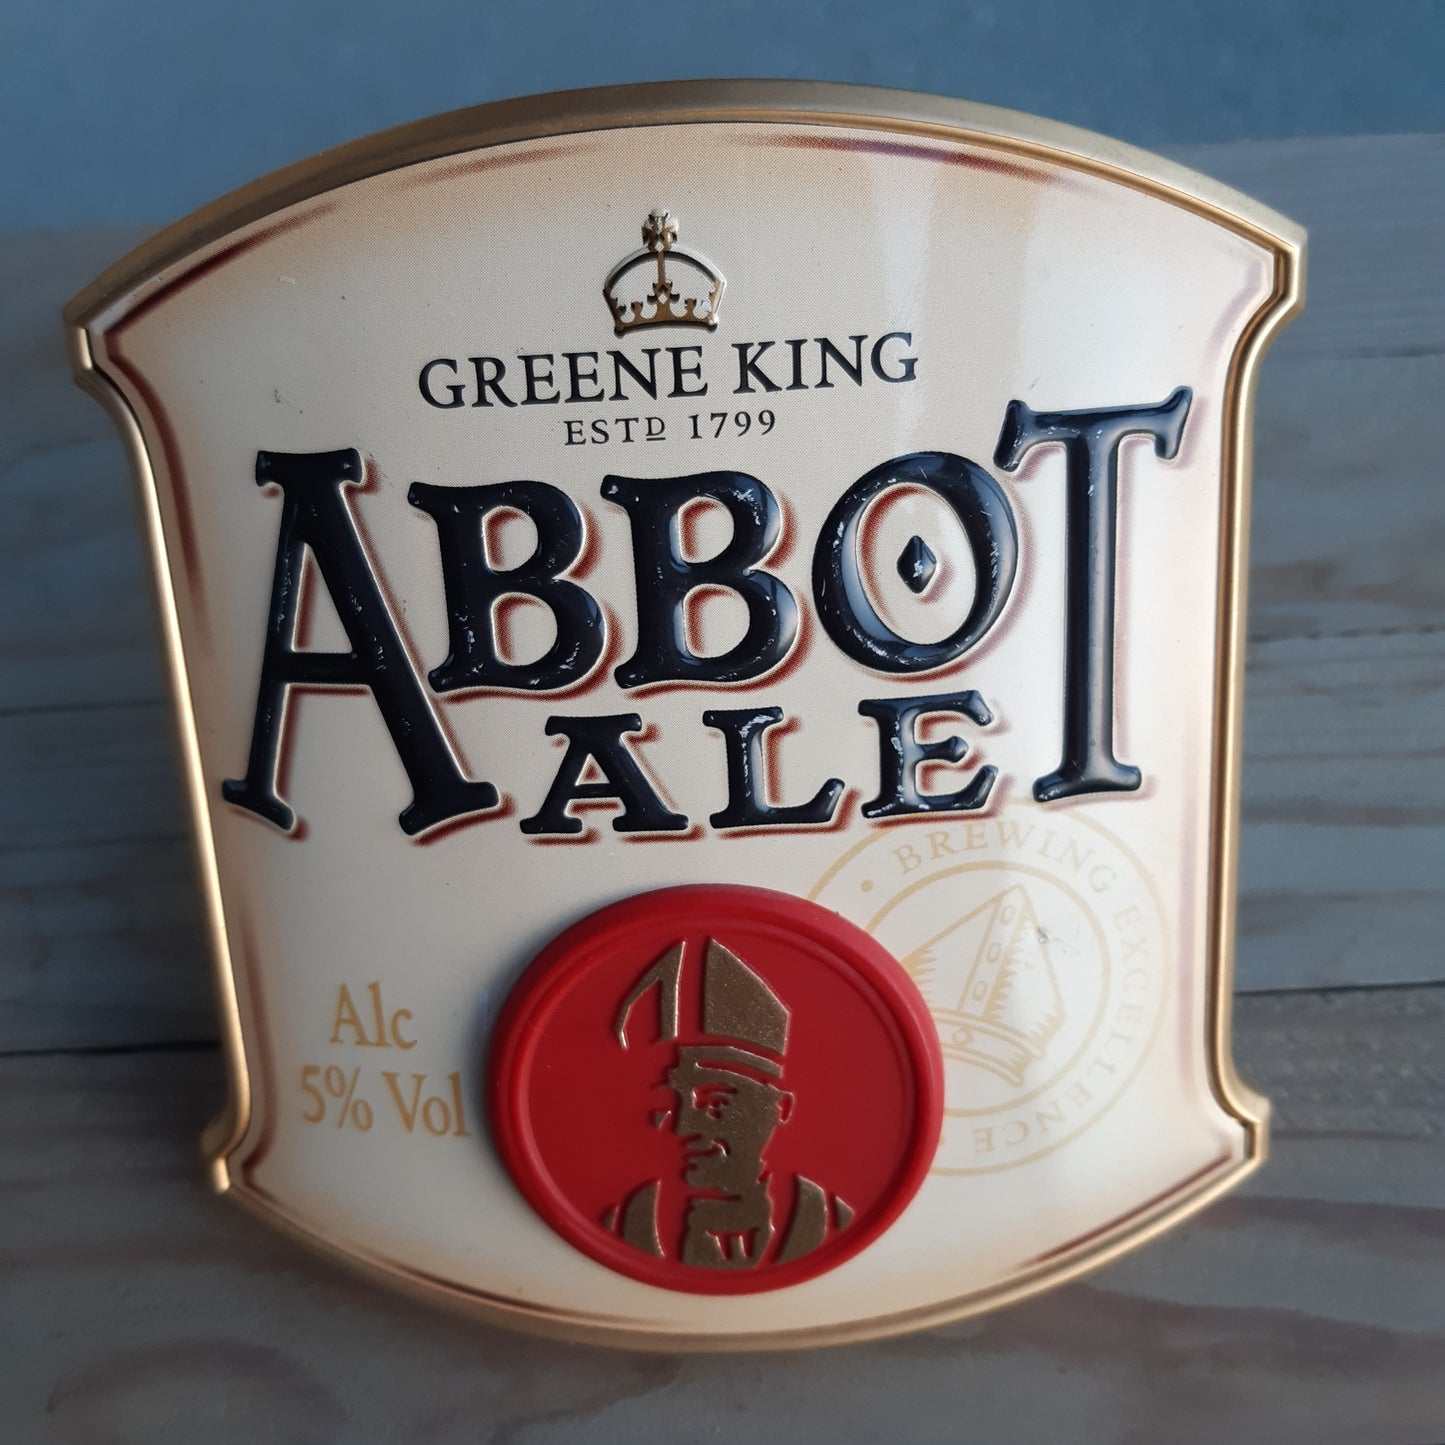 oluen merkki oluthanaan - greene king abbot ale